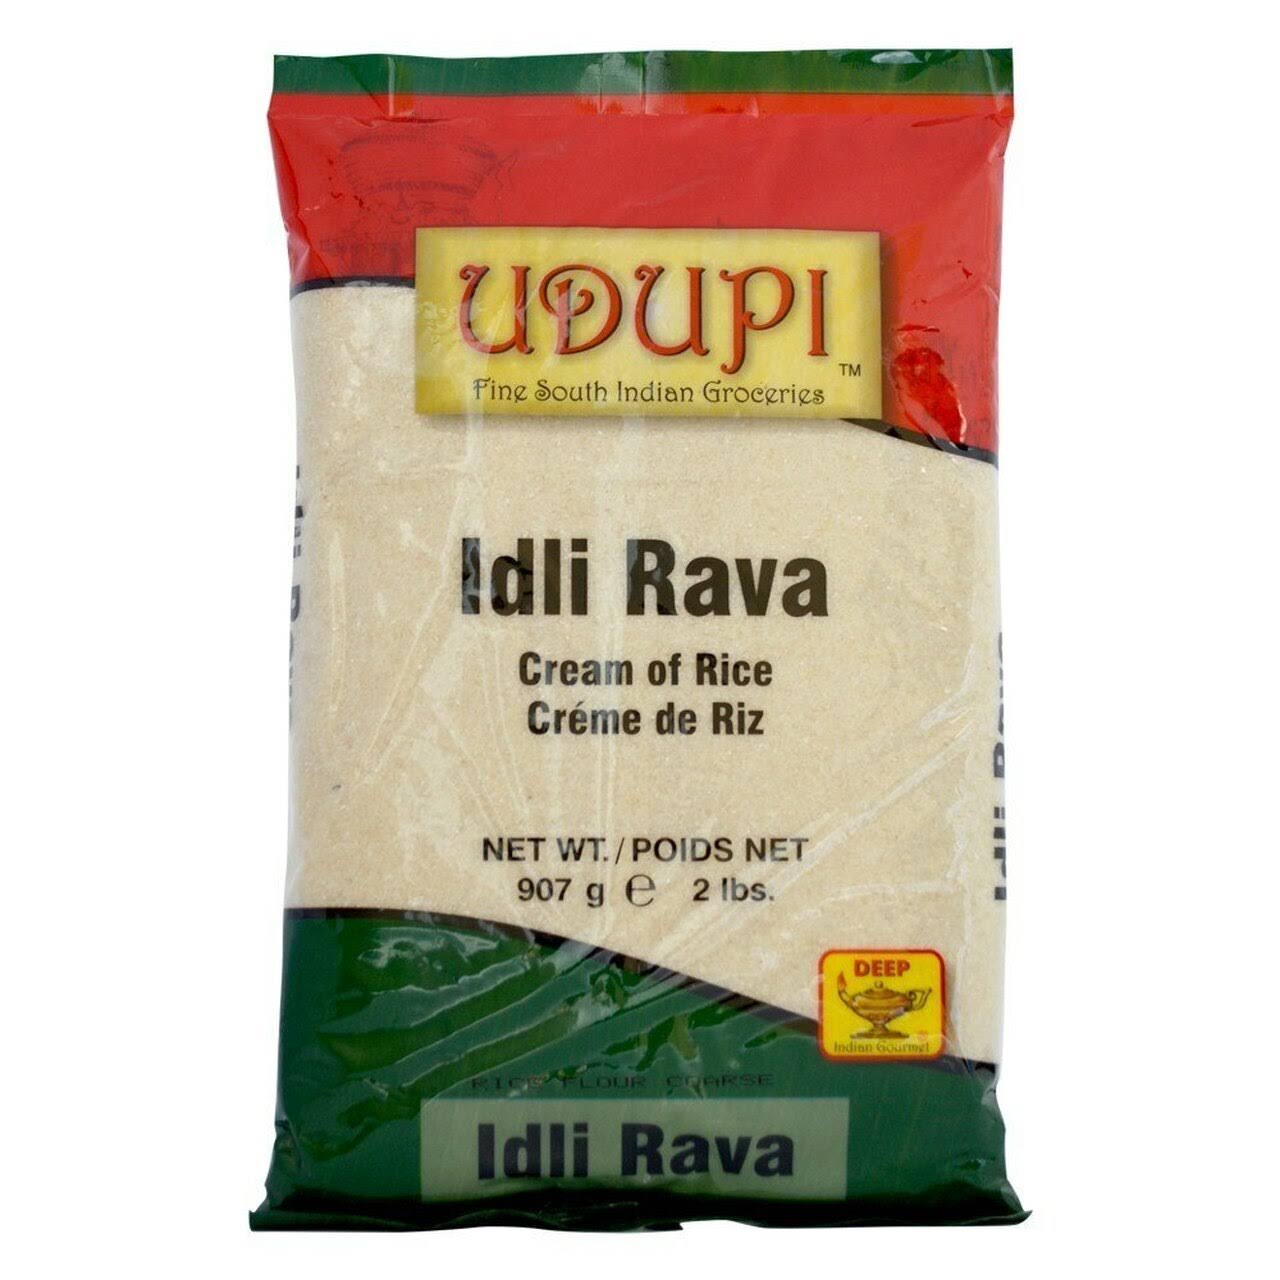 Udupi Idli Rava Flour 2 lbs